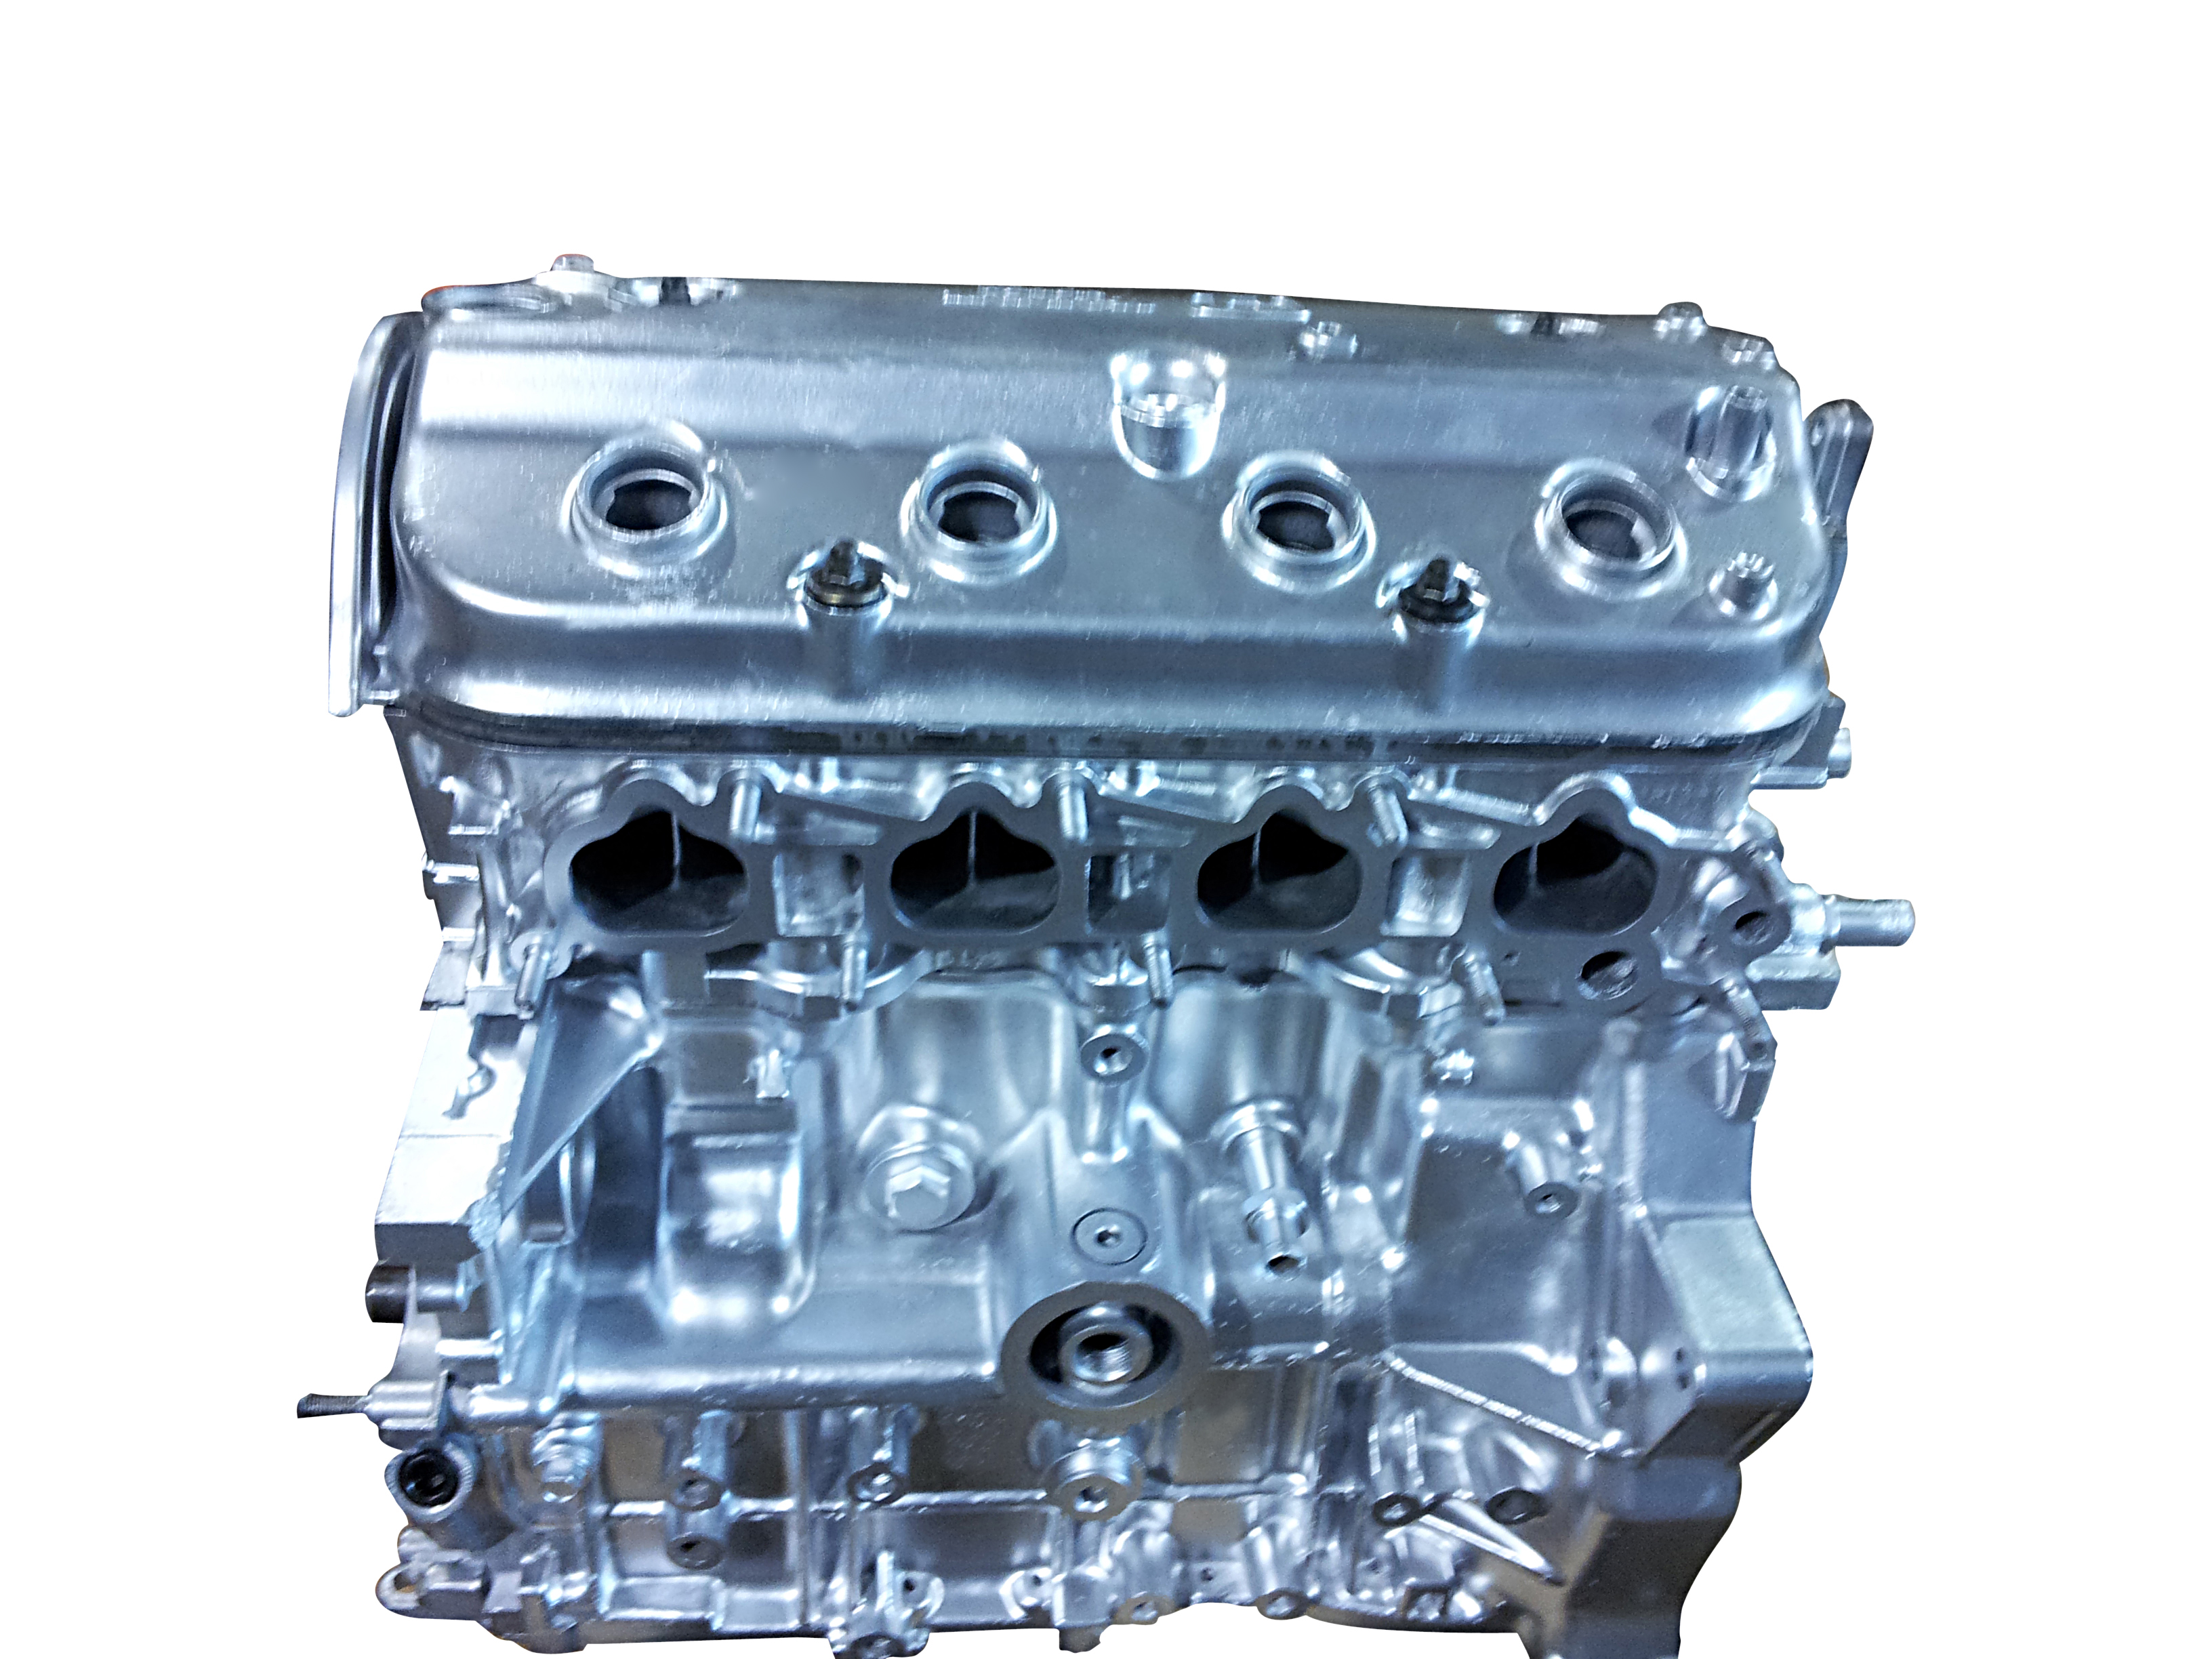 Honda F22A rebuilt engine